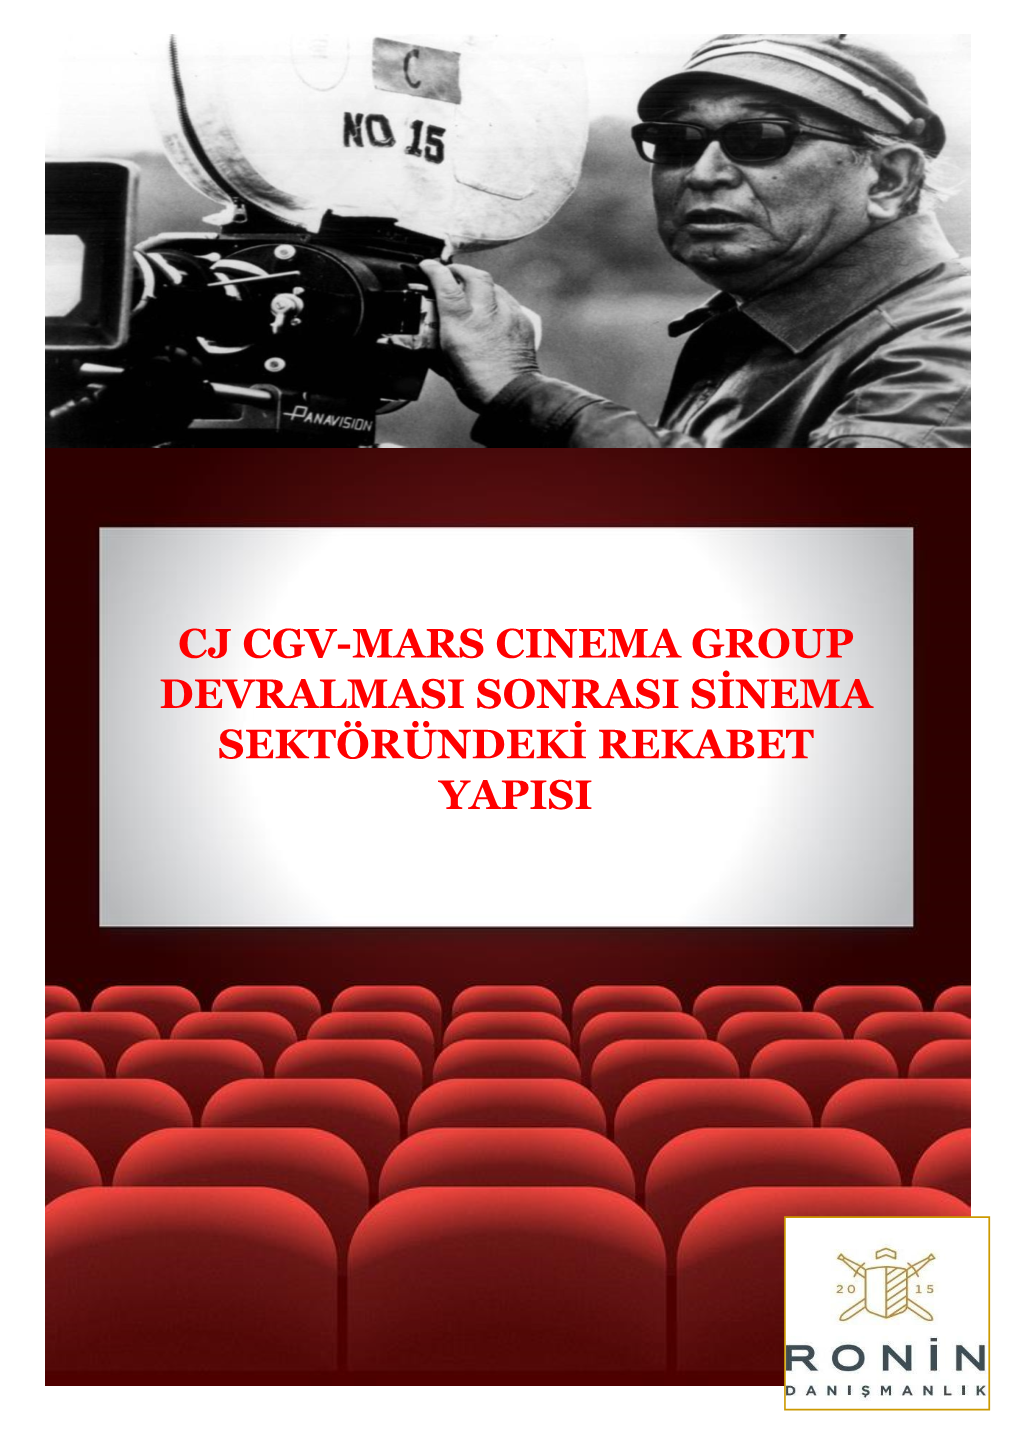 Cj Cgv-Mars Cinema Group Devralmasi Sonrasi Sinema Sektöründeki Rekabet Yapisi